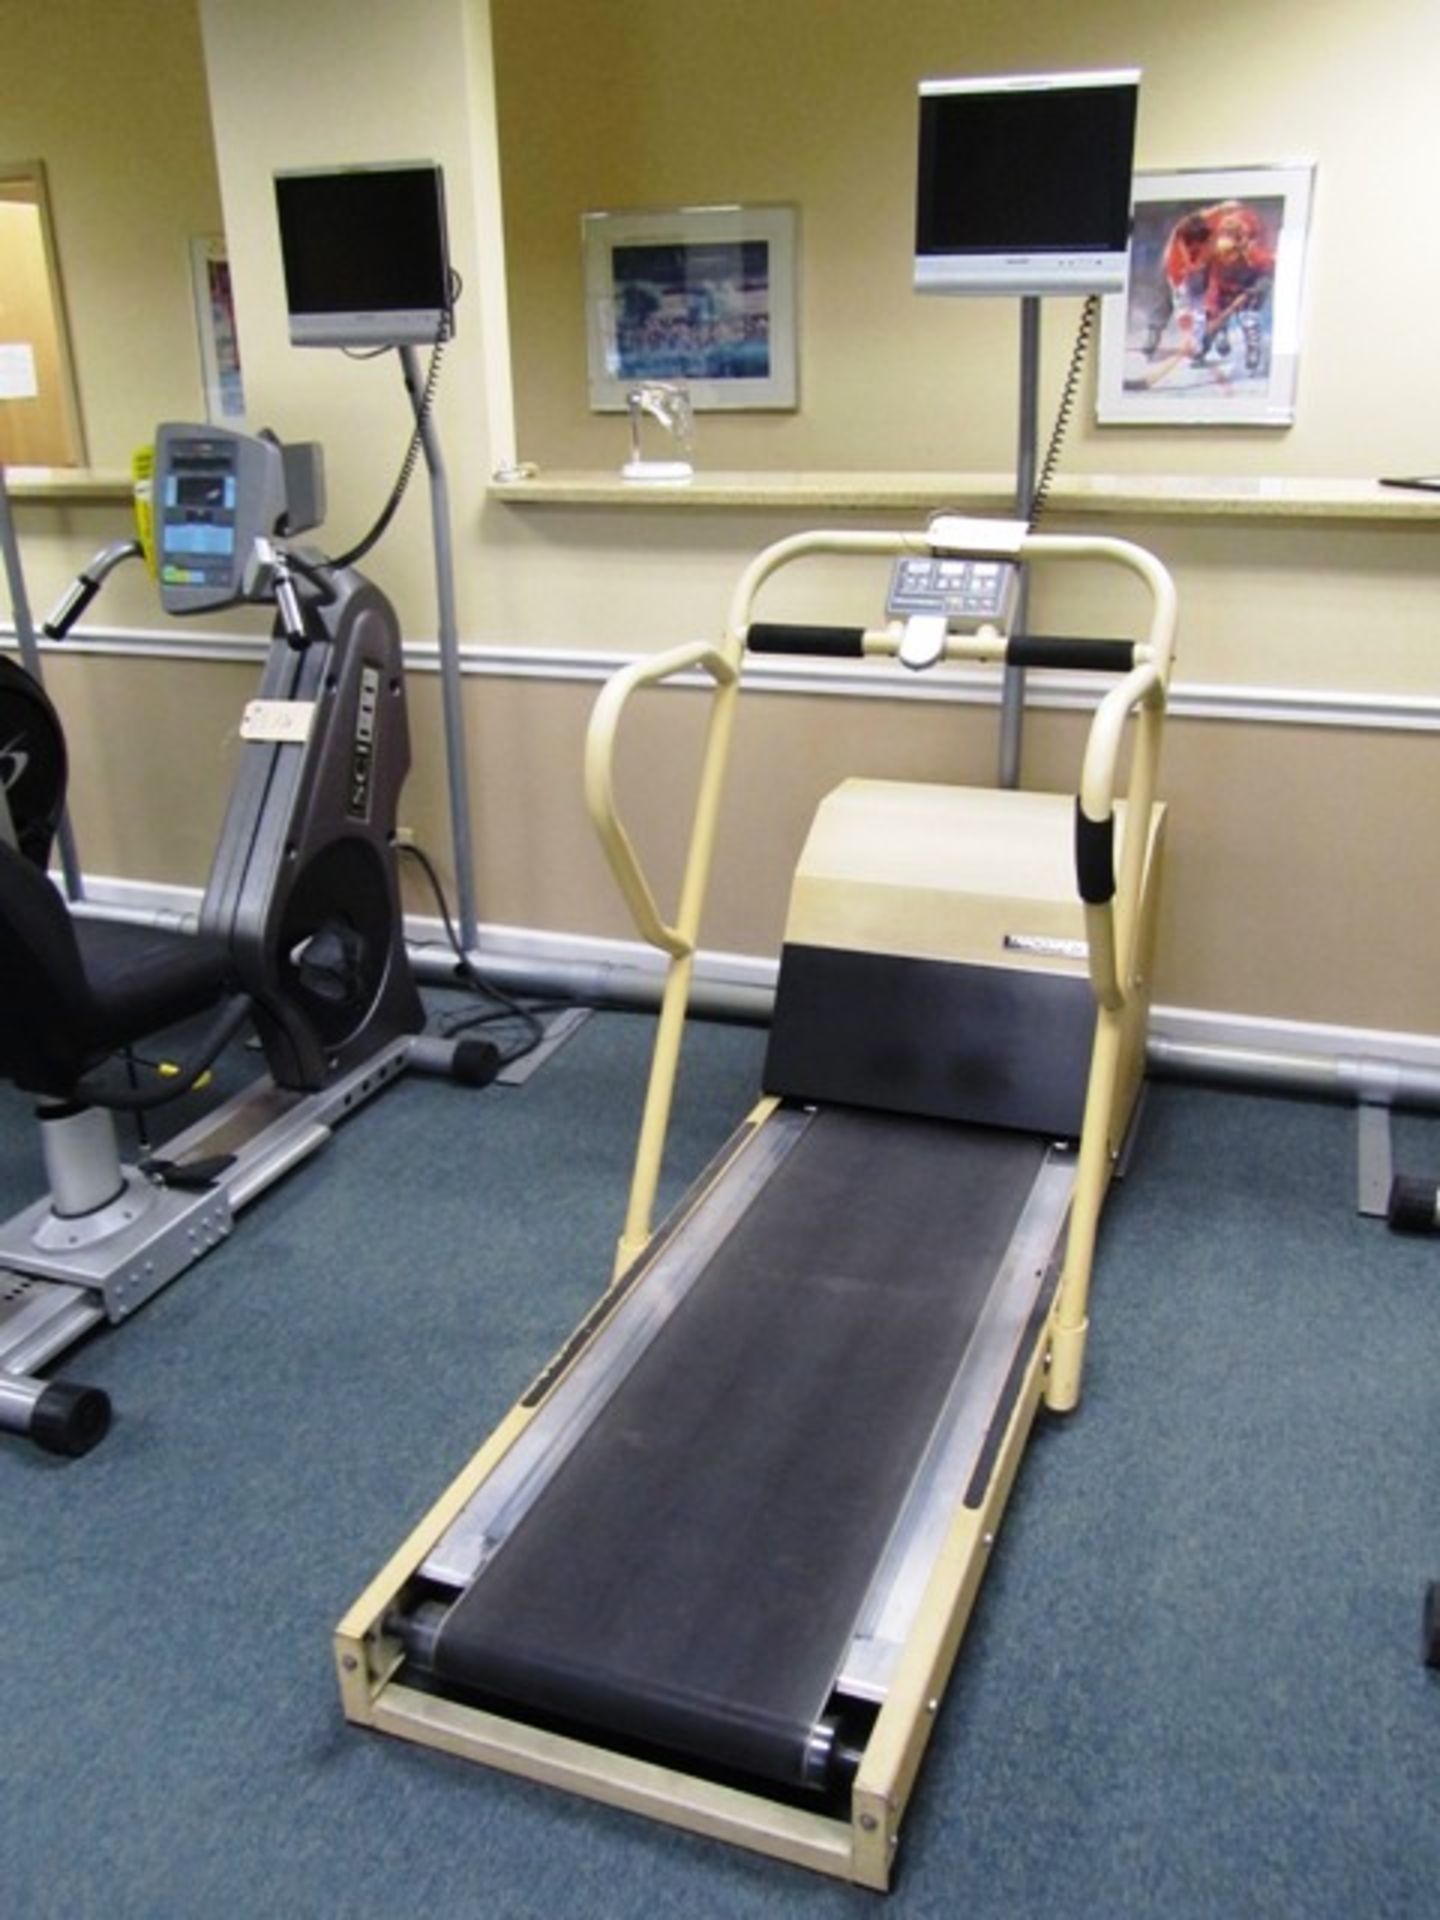 Trackmaster Treadmill with DRO, Sharp TV Screen*located Oak Lawn, IL